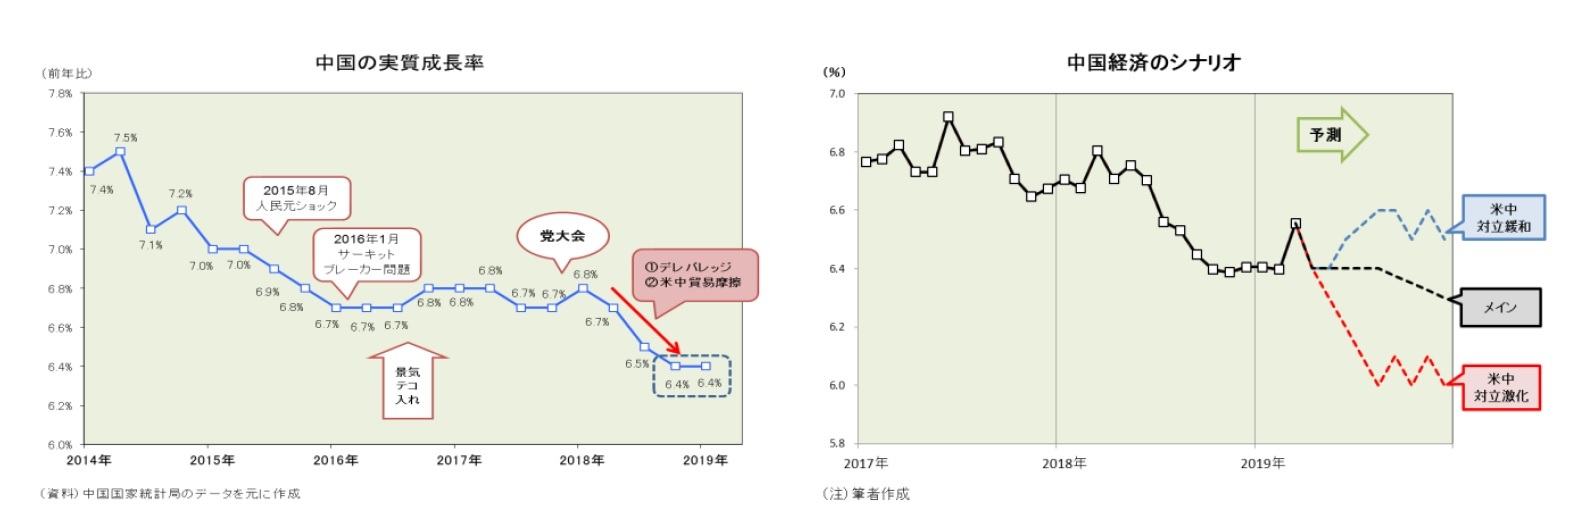 中国の実質成長率/中国経済のシナリオ